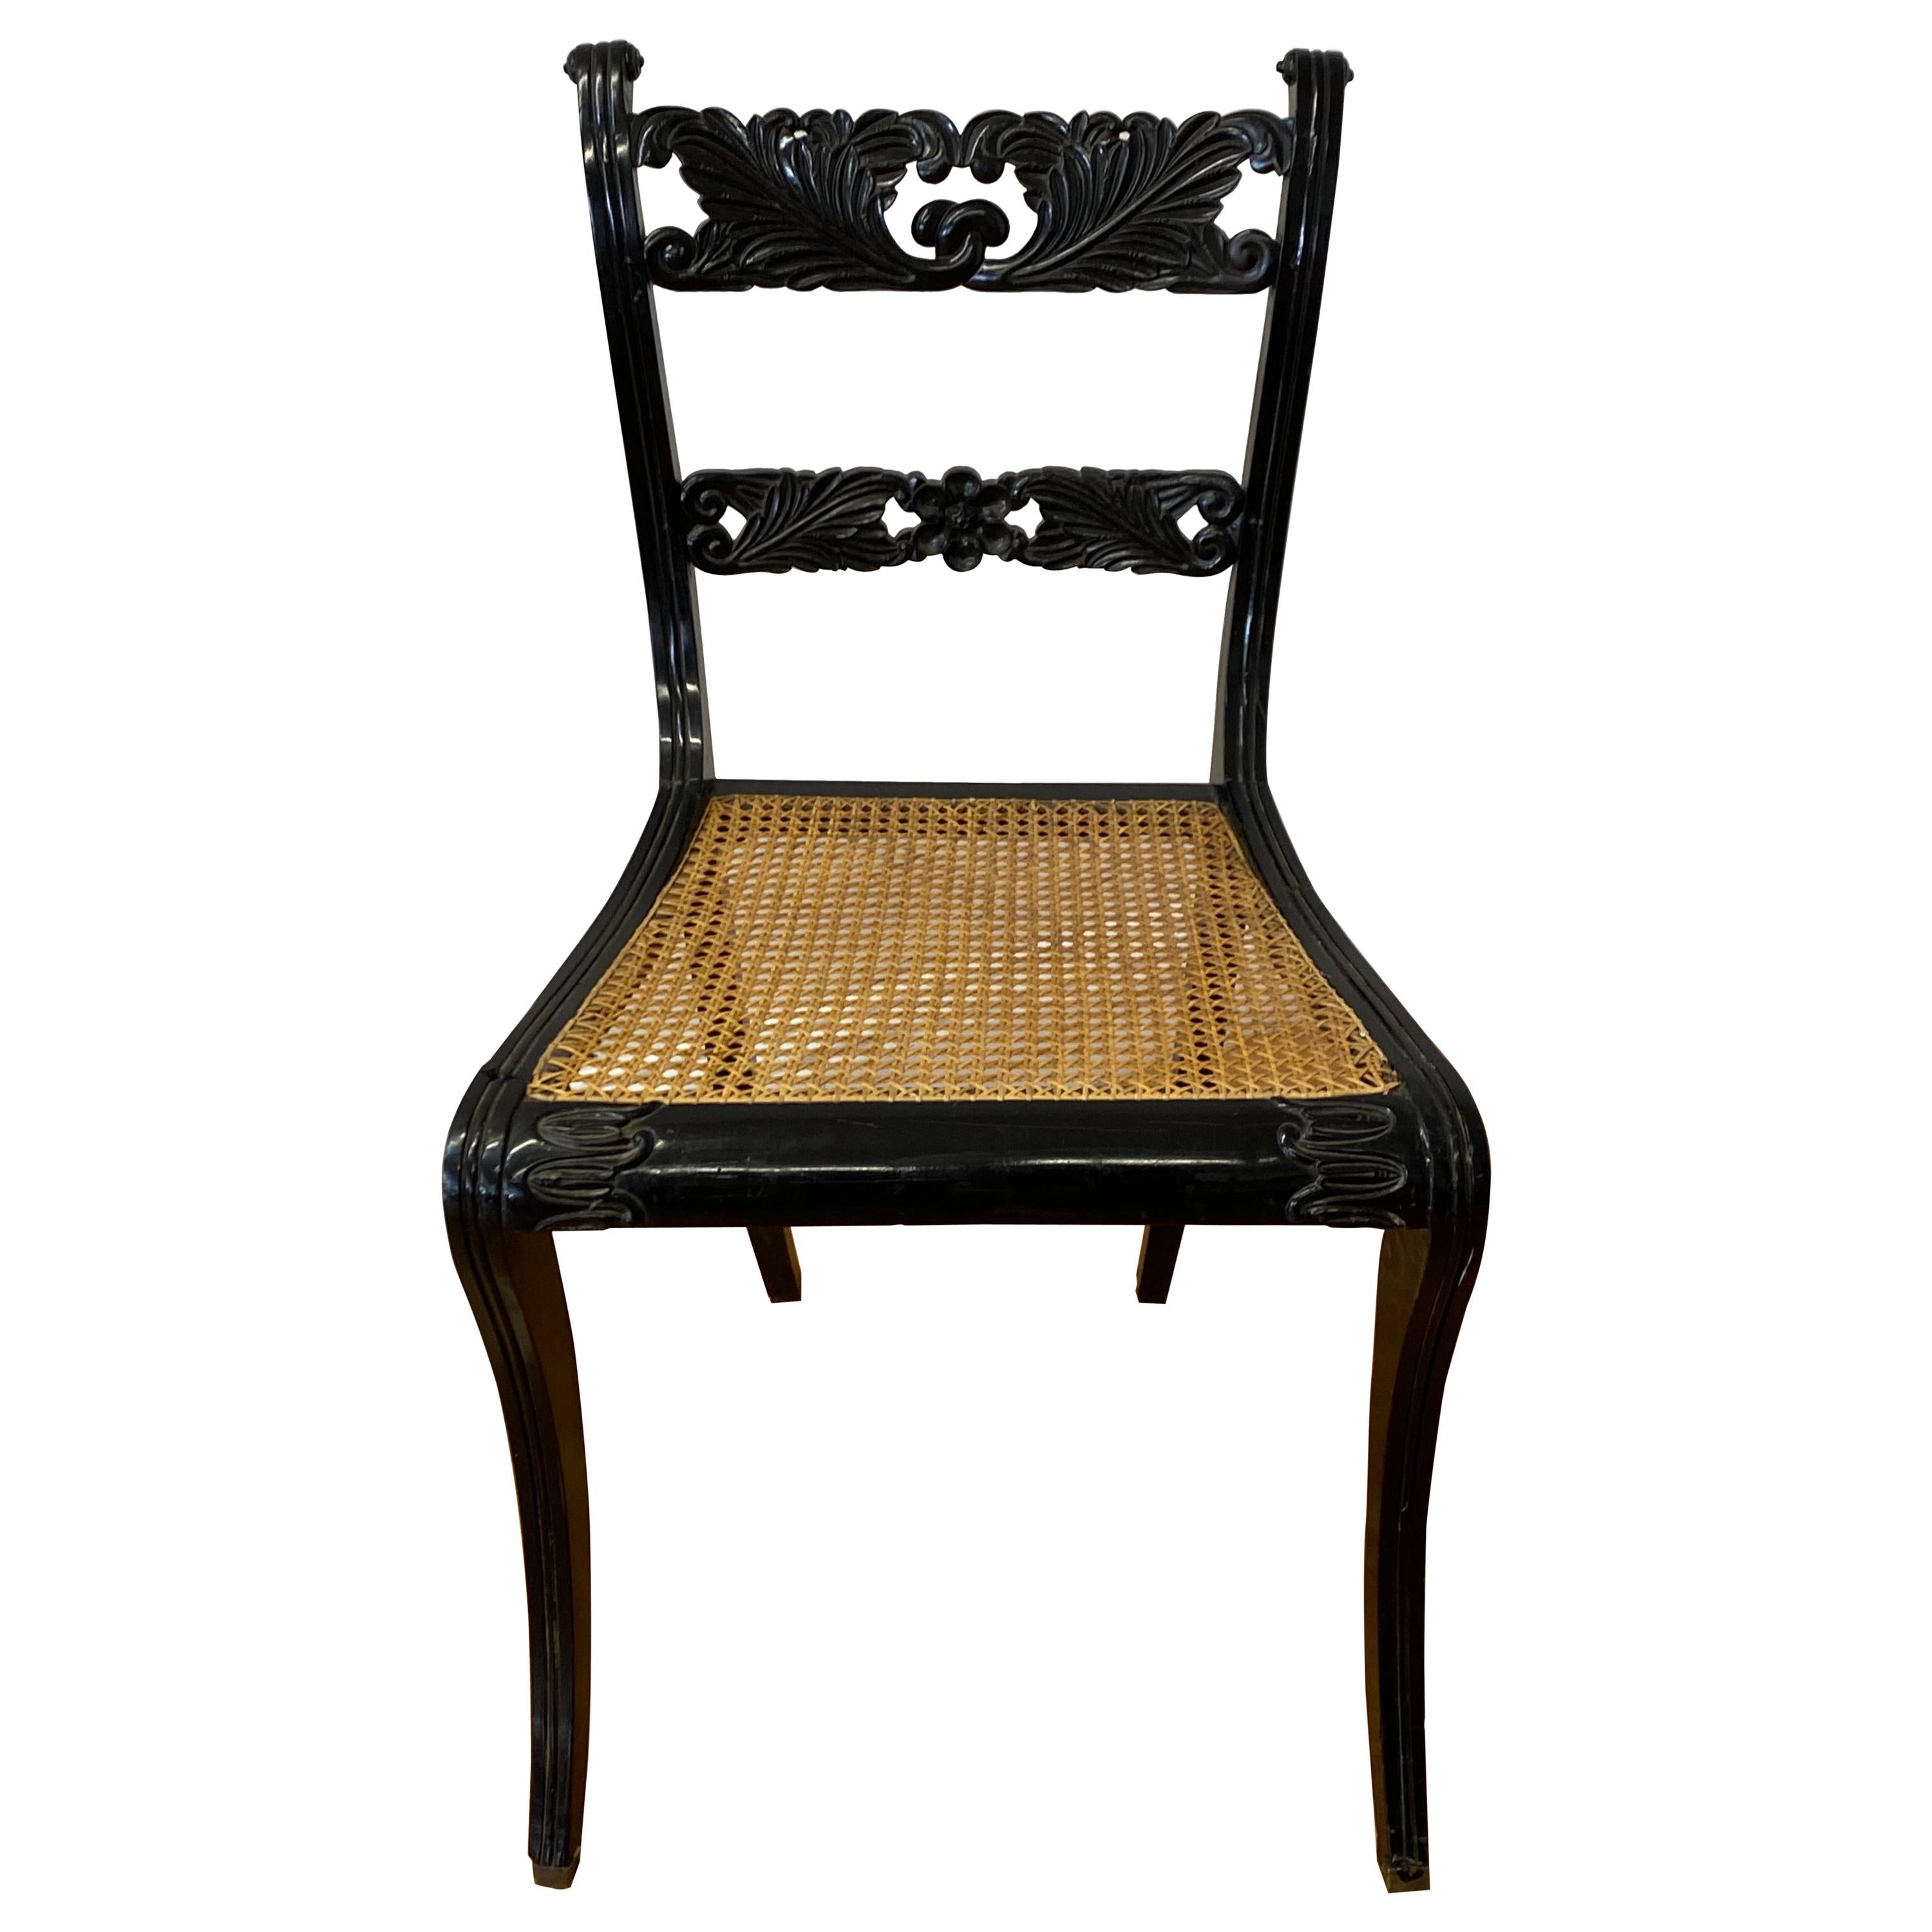 Trafalgar-Stuhl des 19. Jahrhunderts mit Rohrstühle und Blumenmotiv, um 1830